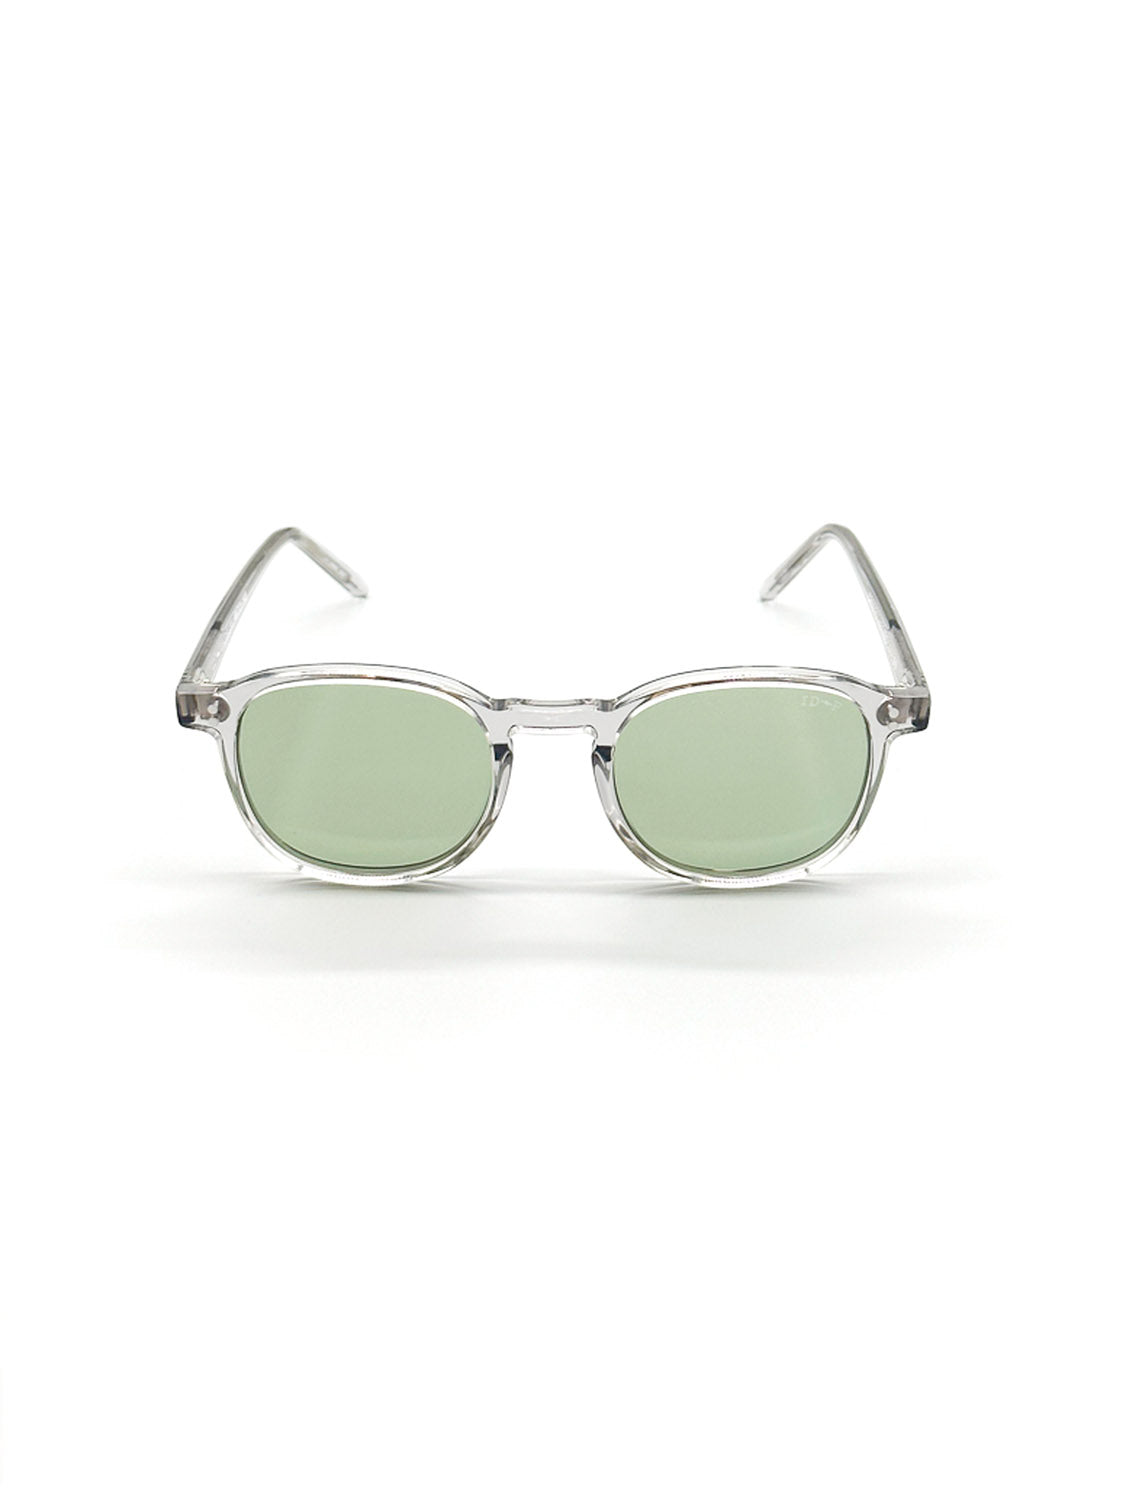 A144C3LG - ID polarized sunglasses